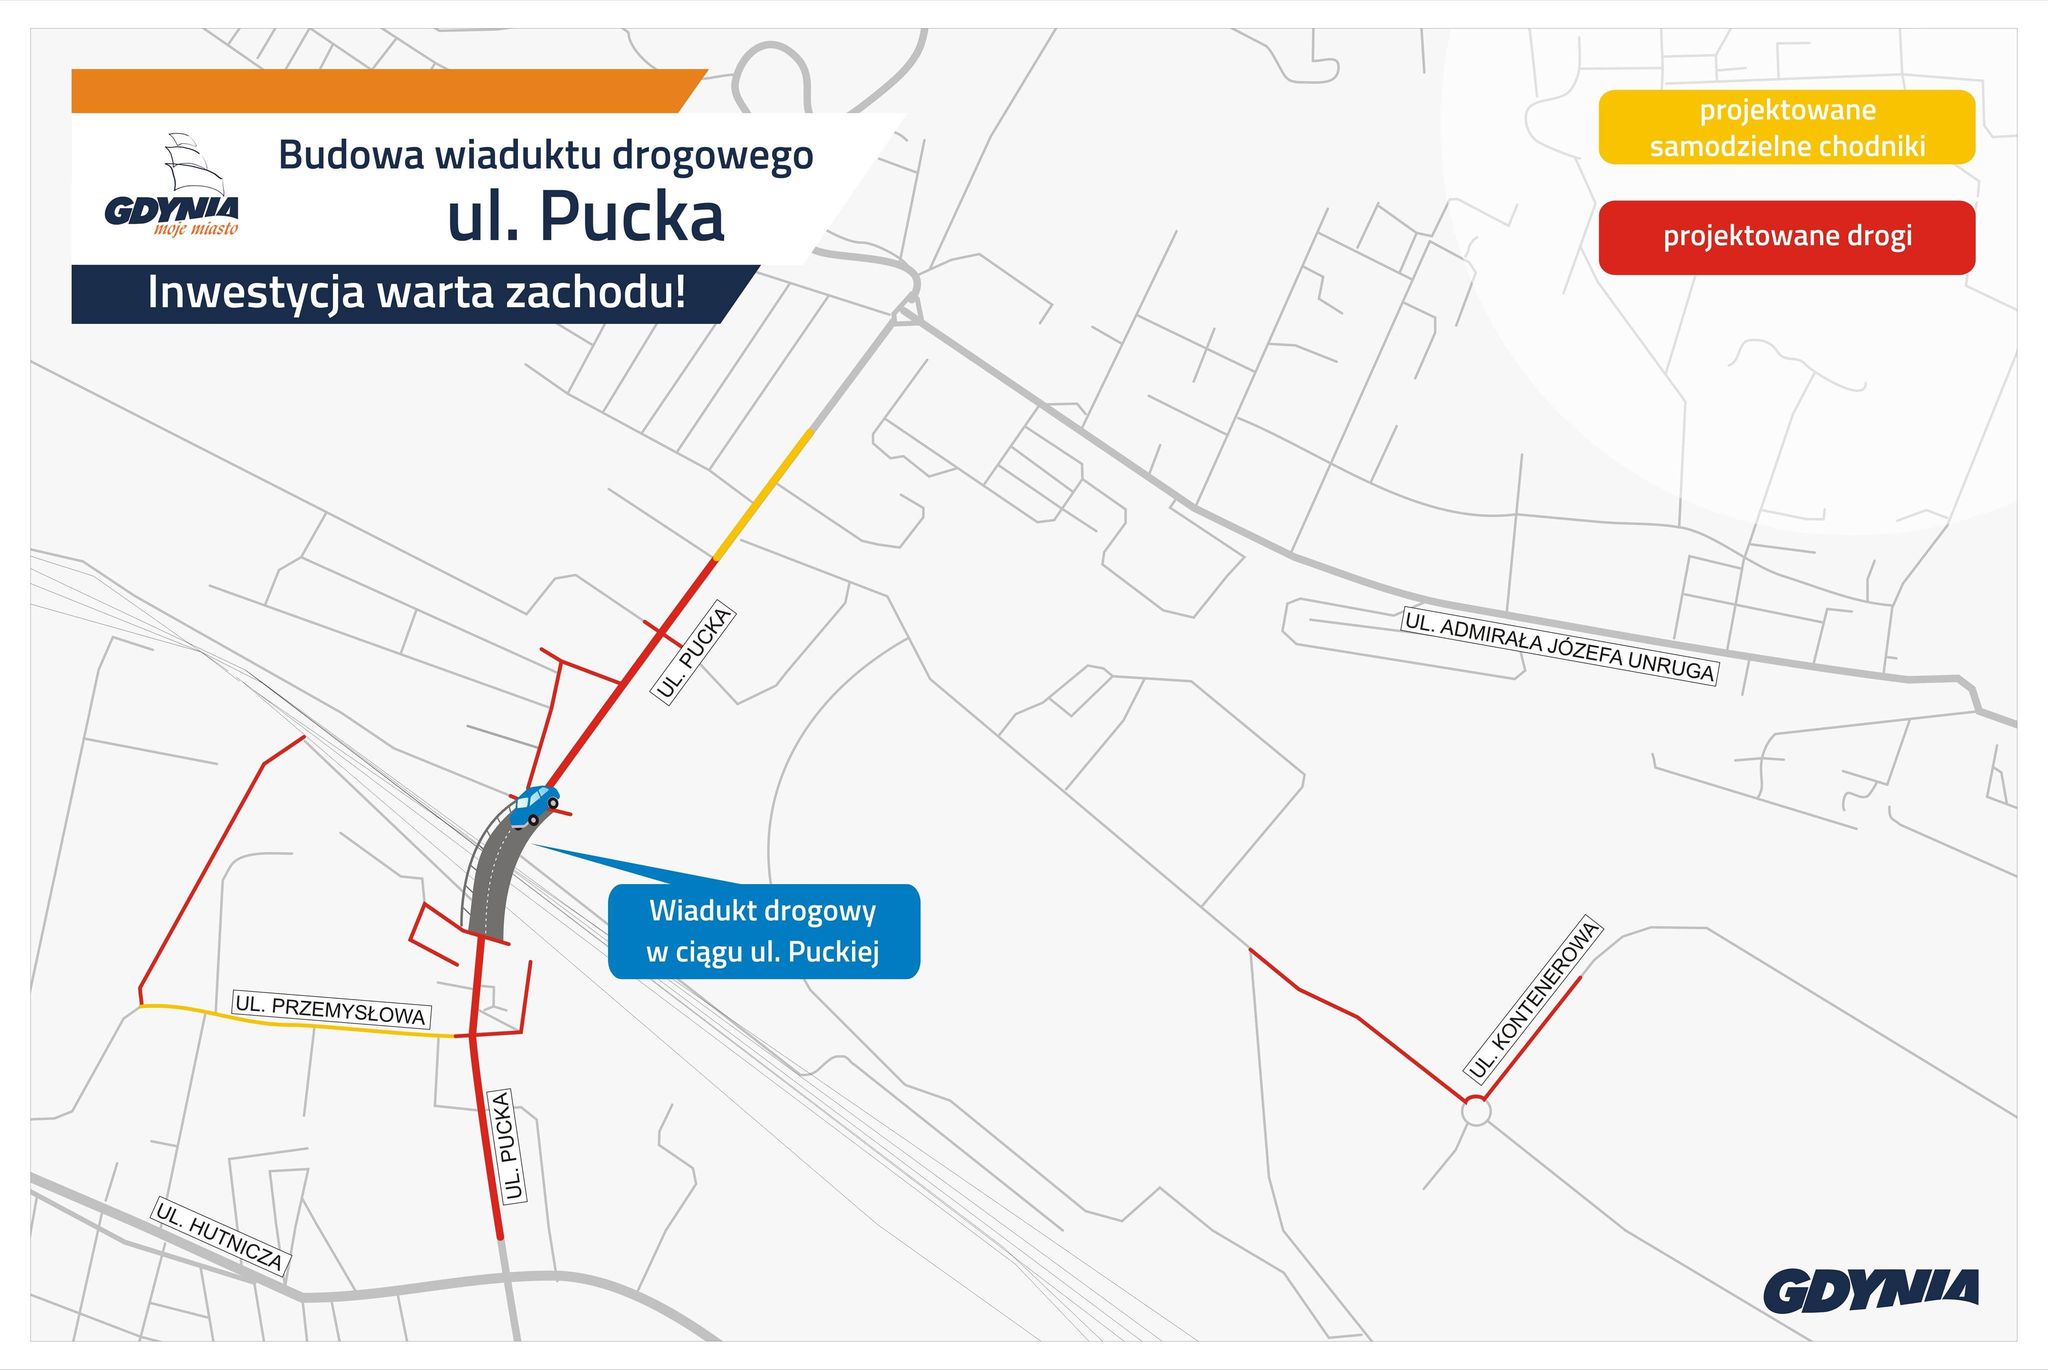 zakres realizacji inwestycji wiaduktu drogowego w ciągu ul. Puckiej, mat. dzielnice#wGdyni